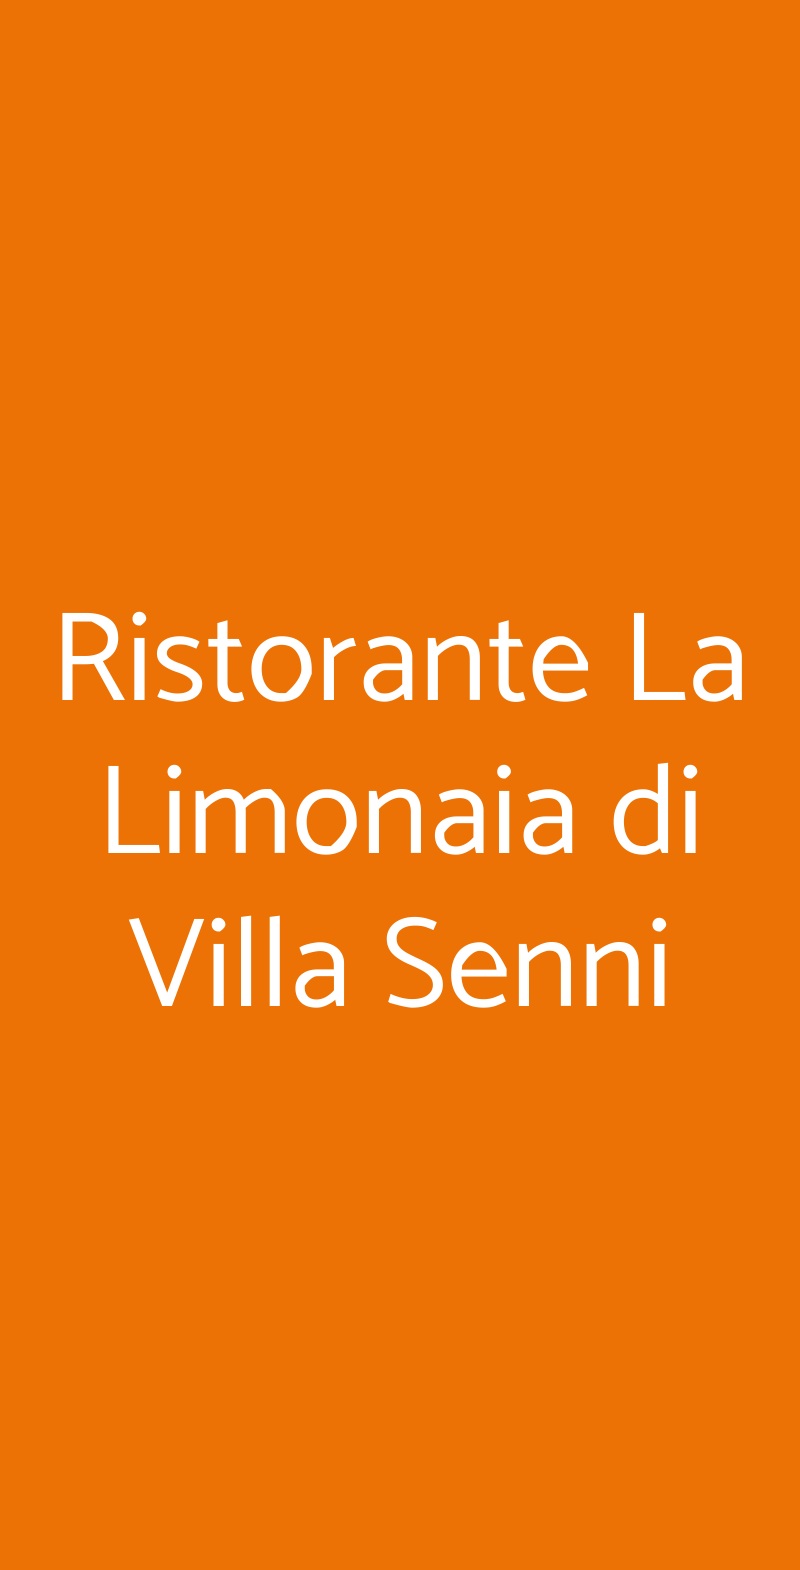 Ristorante La Limonaia di Villa Senni Scarperia menù 1 pagina